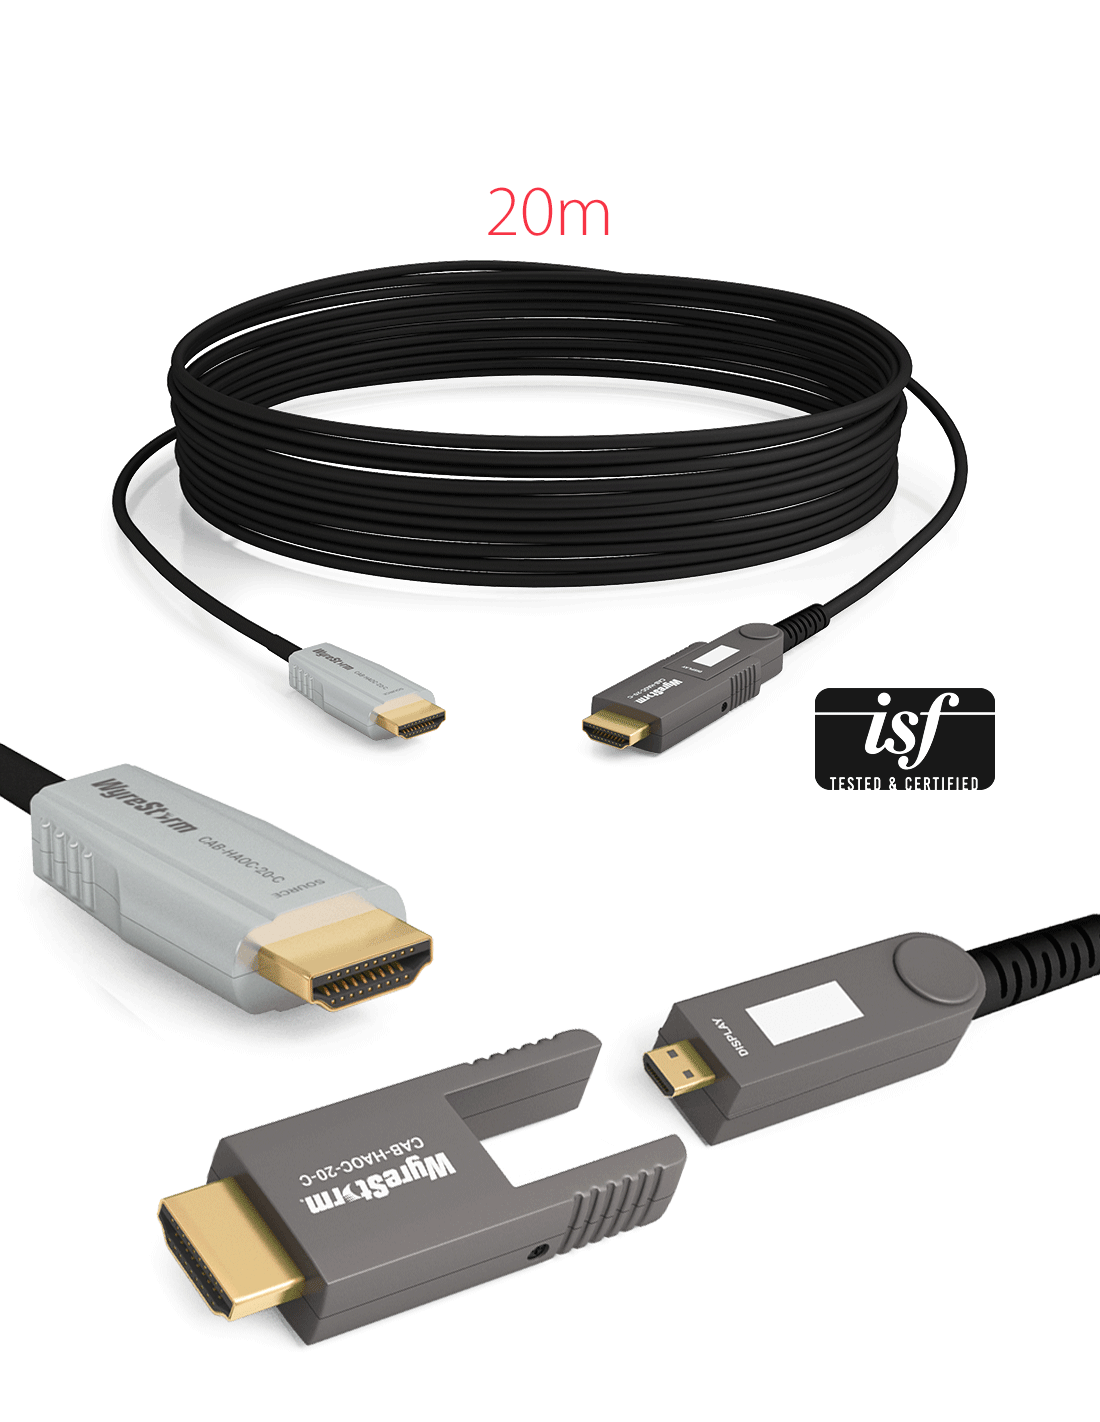 CABLE HDMI (AMOVIBLE) SUR FIBRE - 20M - 4K/60 4:4:4 8-bit and 4K